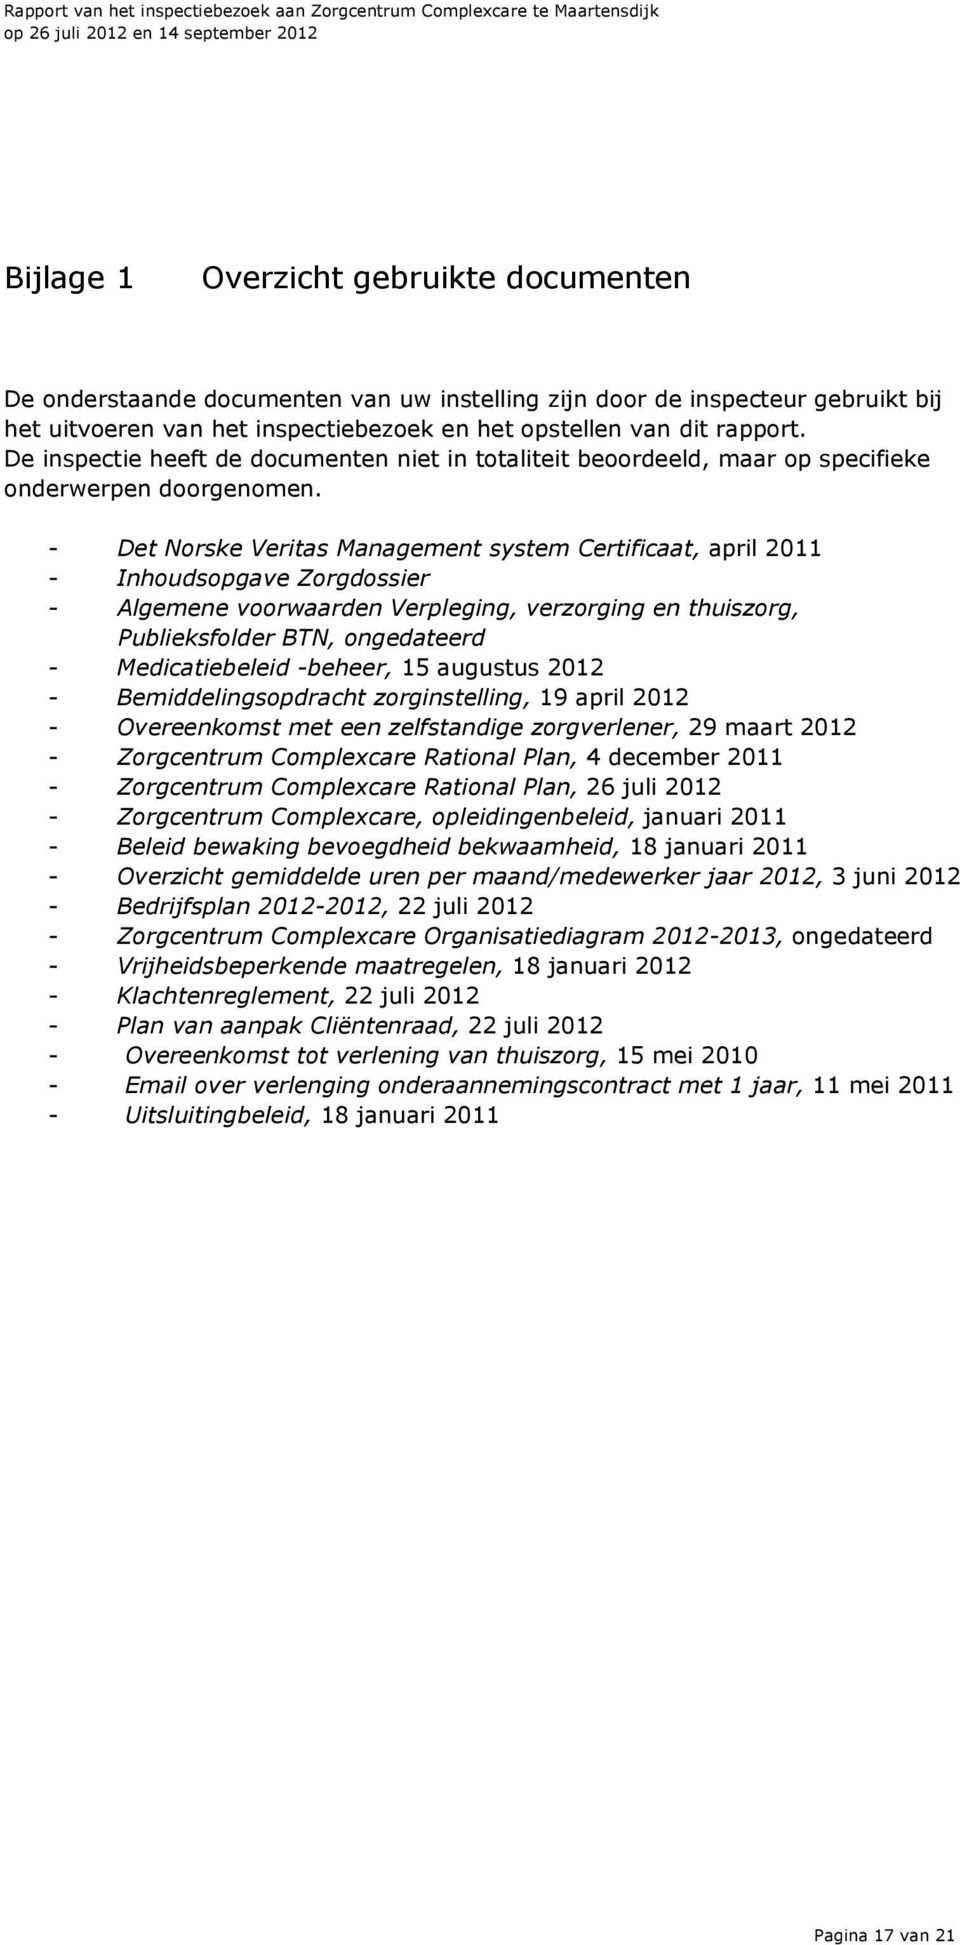 - Det Norske Veritas Management system Certificaat, april 2011 - Inhoudsopgave Zorgdossier - Algemene voorwaarden Verpleging, verzorging en thuiszorg, Publieksfolder BTN, ongedateerd -